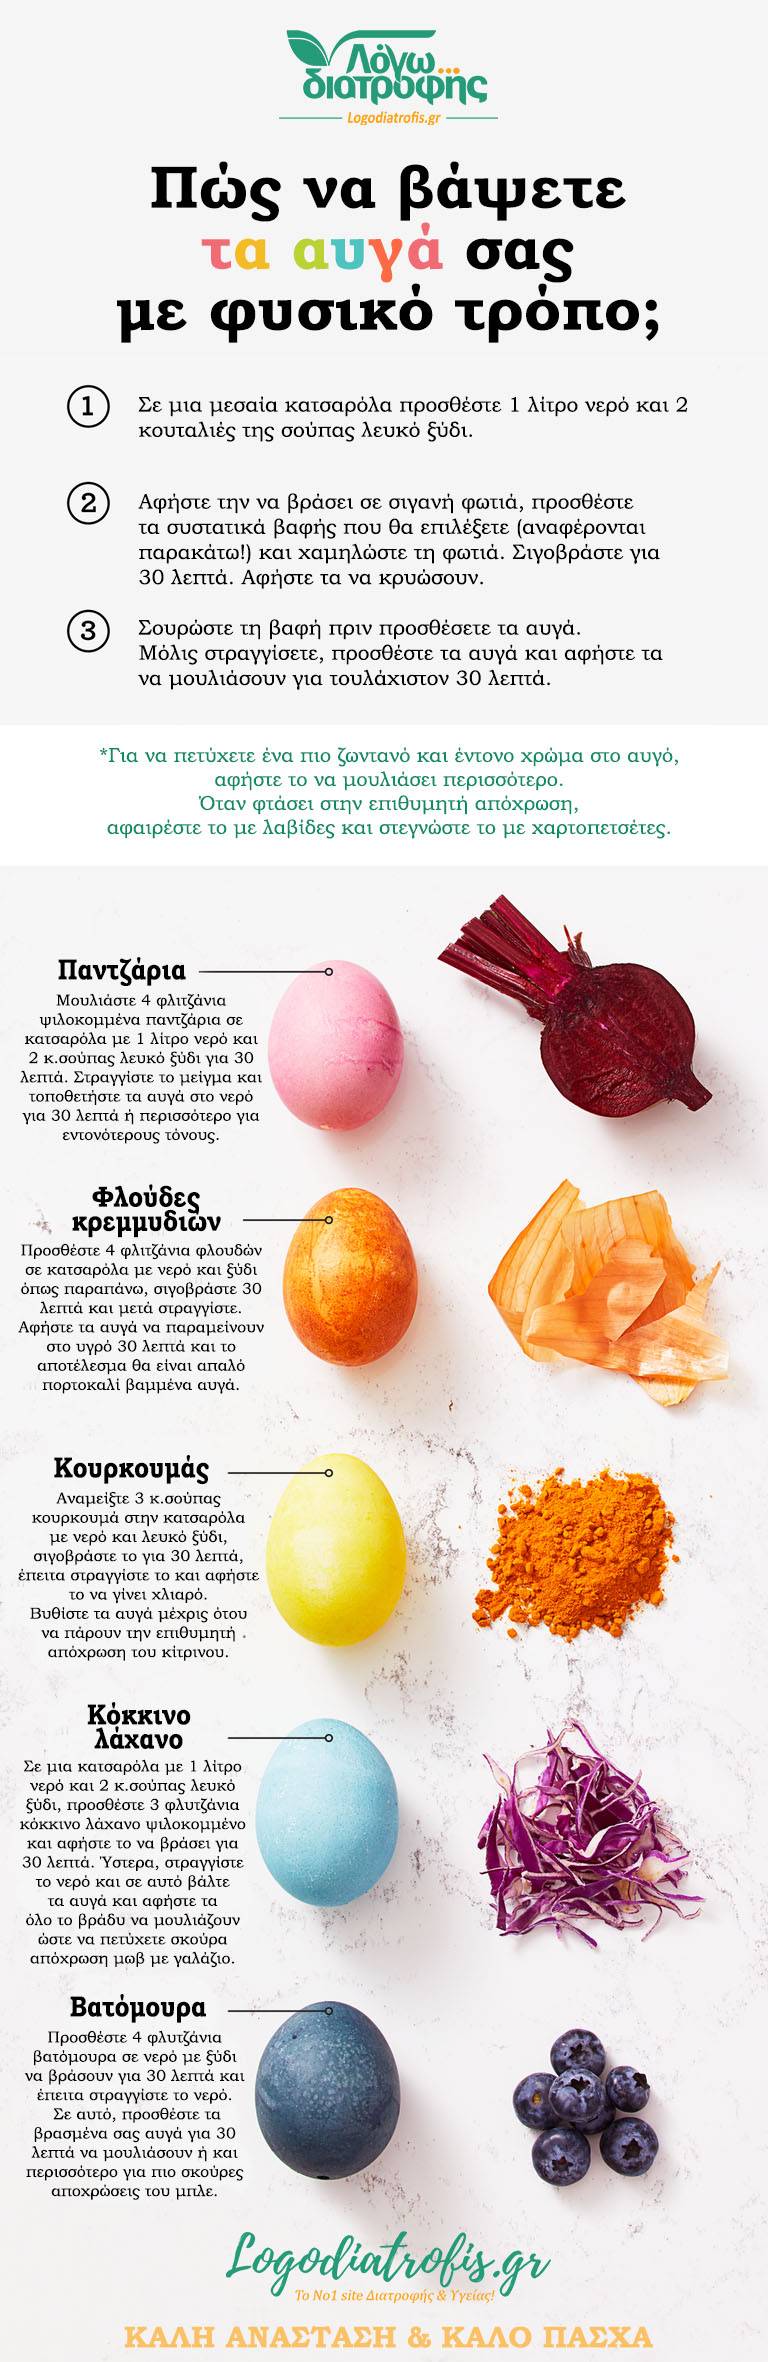 Πως να βάψετε τα αυγά σας με φυσικό τρόπο - Ανάσταση